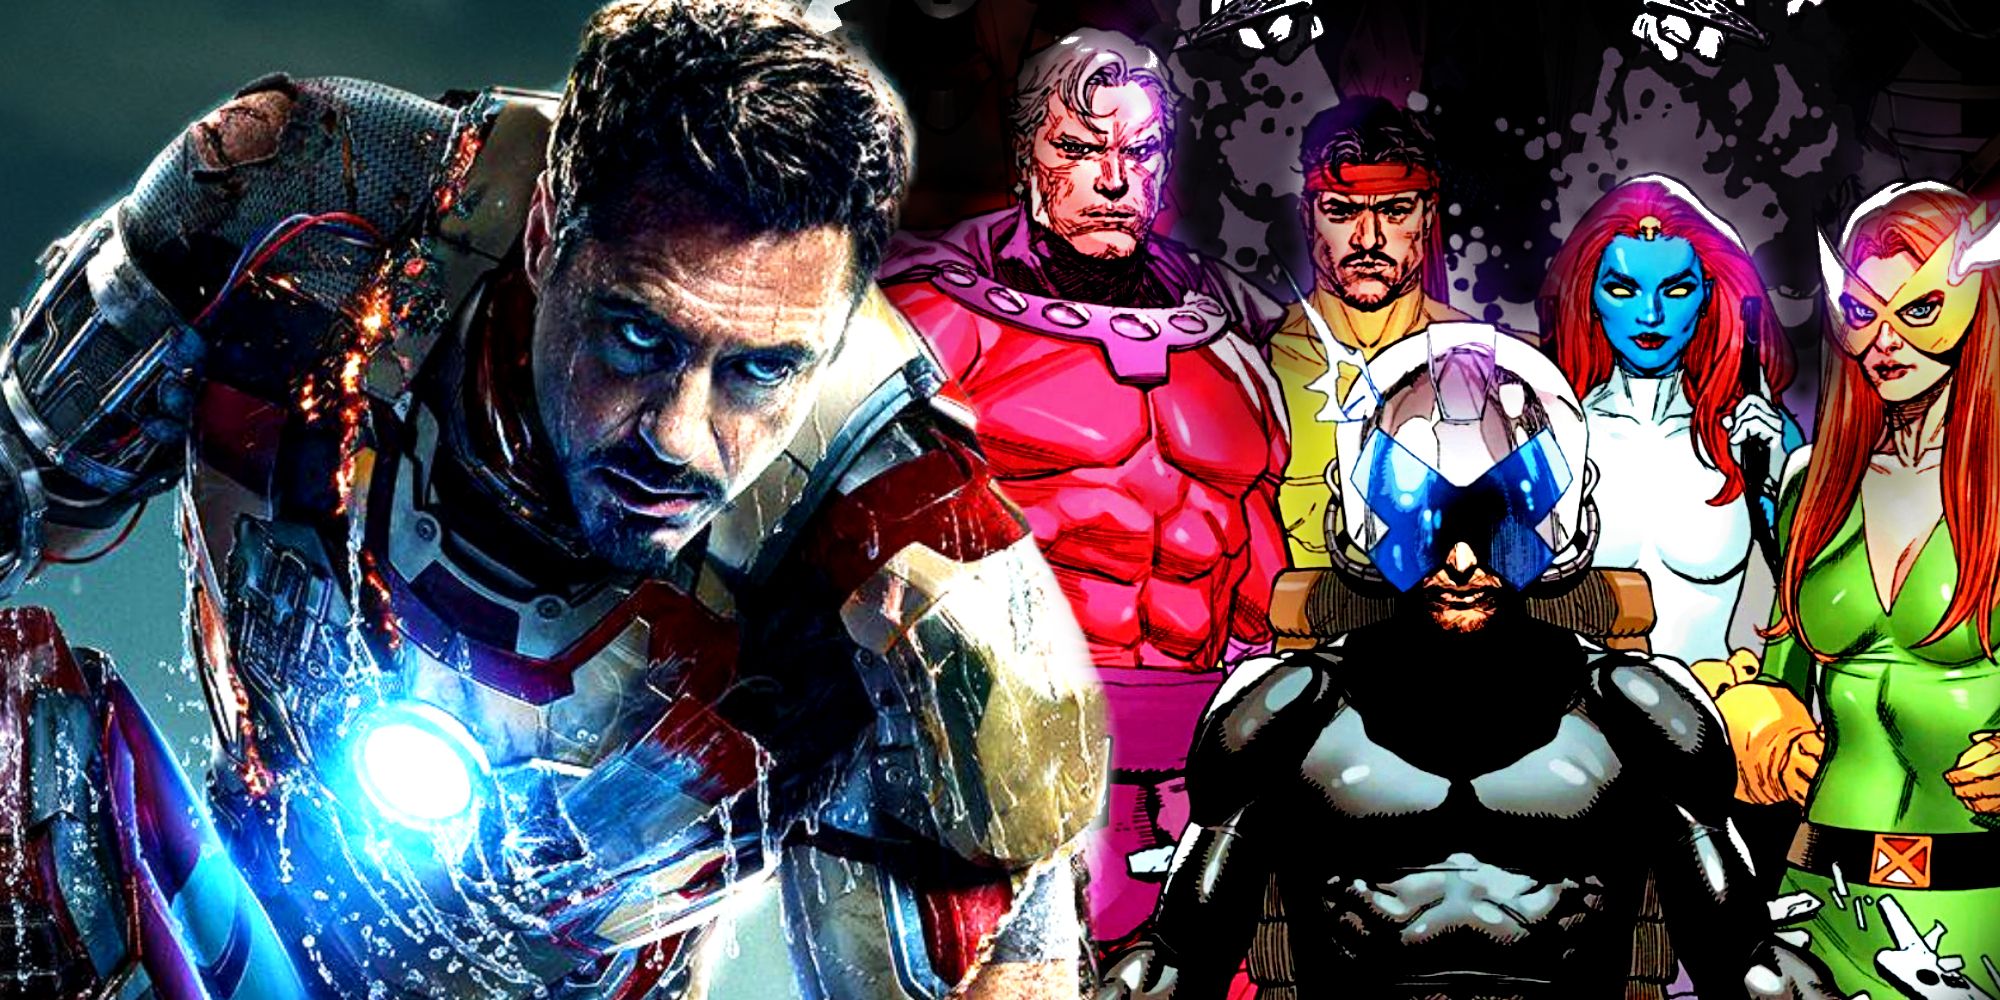 Un villano de Iron Man descubrió en secreto a los mutantes del MCU hace 14 años según la inteligente teoría de X-Men